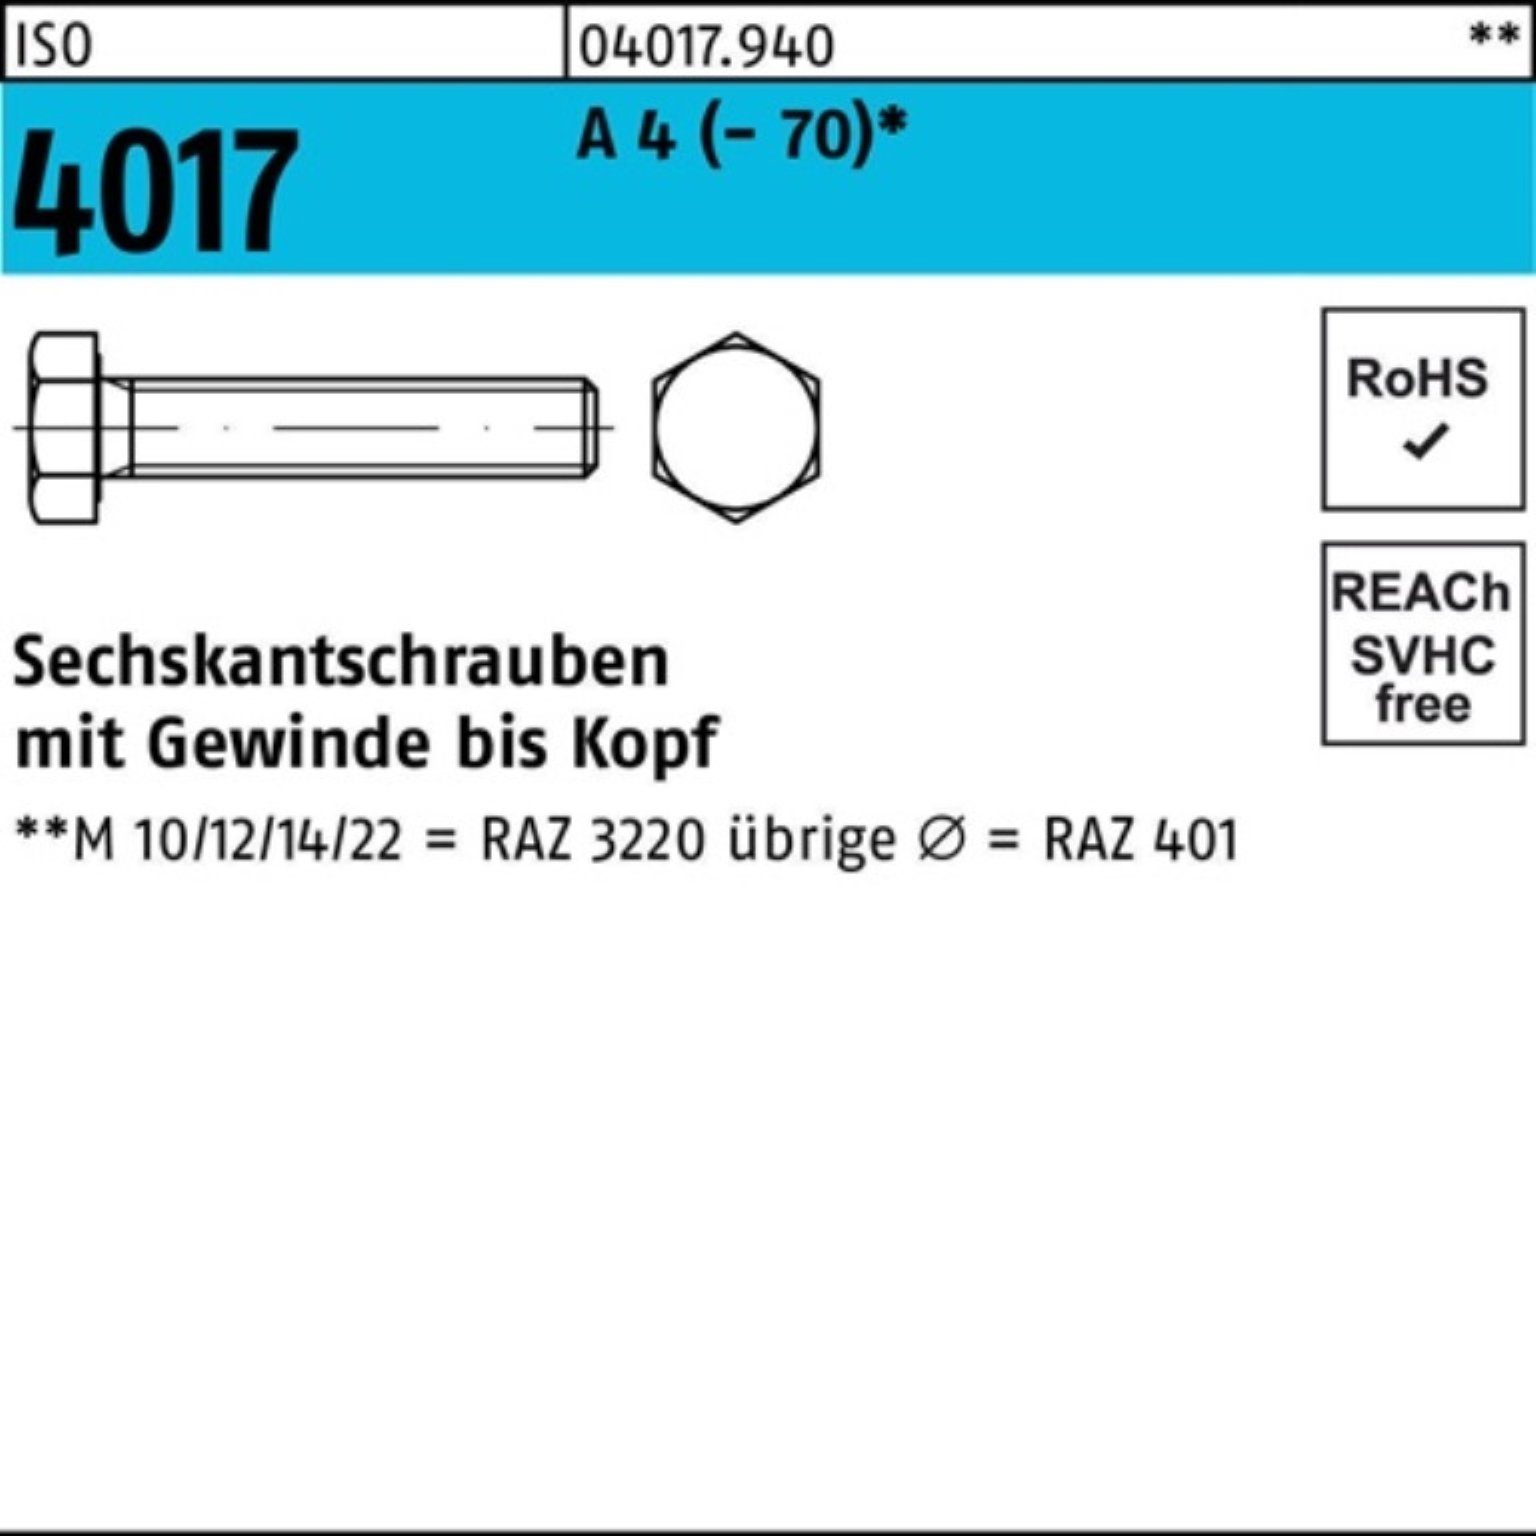 Bufab Sechskantschraube 100er Pack Sechskantschraube ISO 4017 VG M8x 60 A 4 (70) 100 Stück